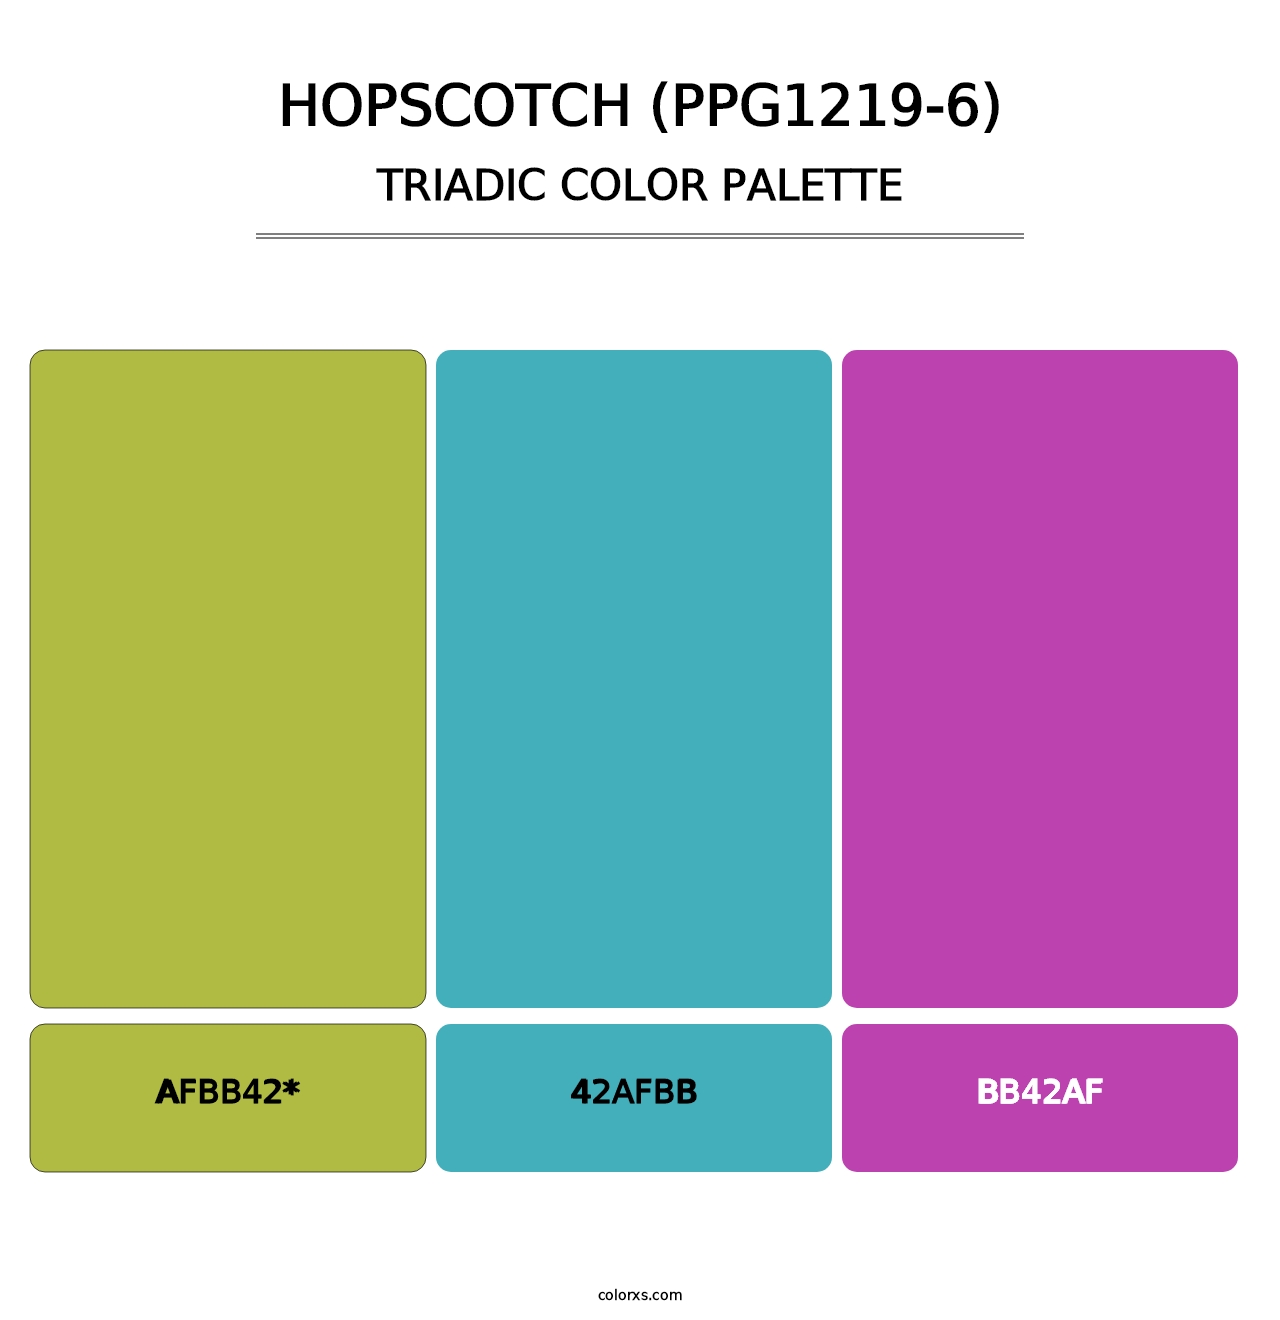 Hopscotch (PPG1219-6) - Triadic Color Palette